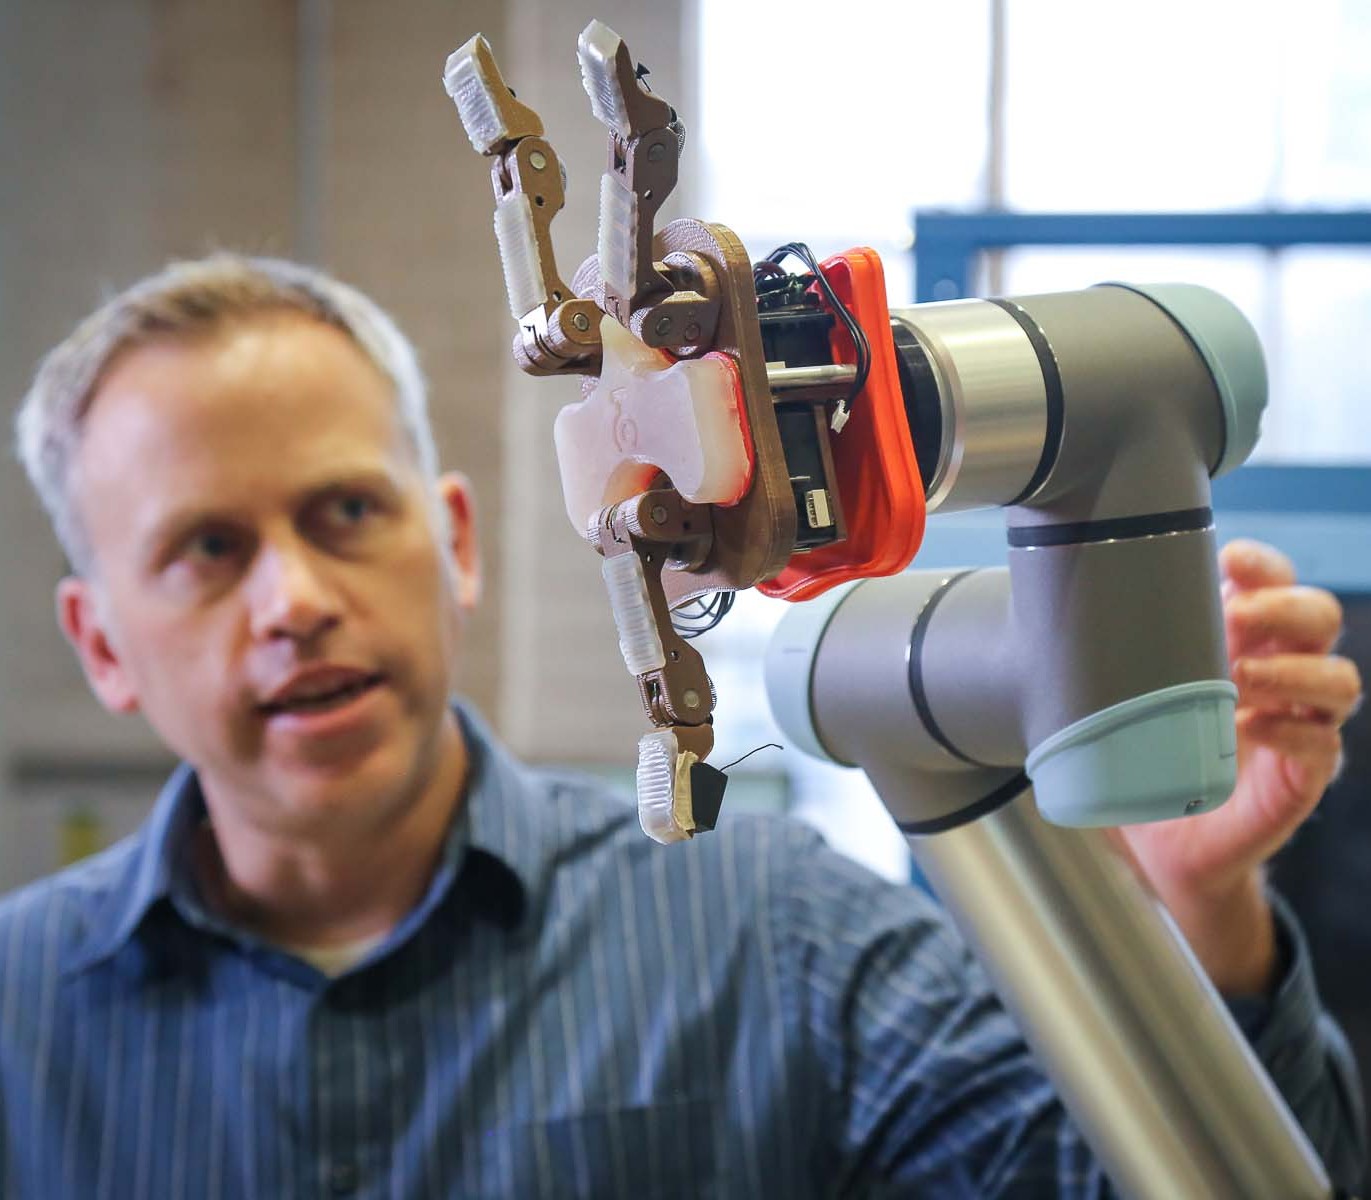 A reseracher showing a robot hand.